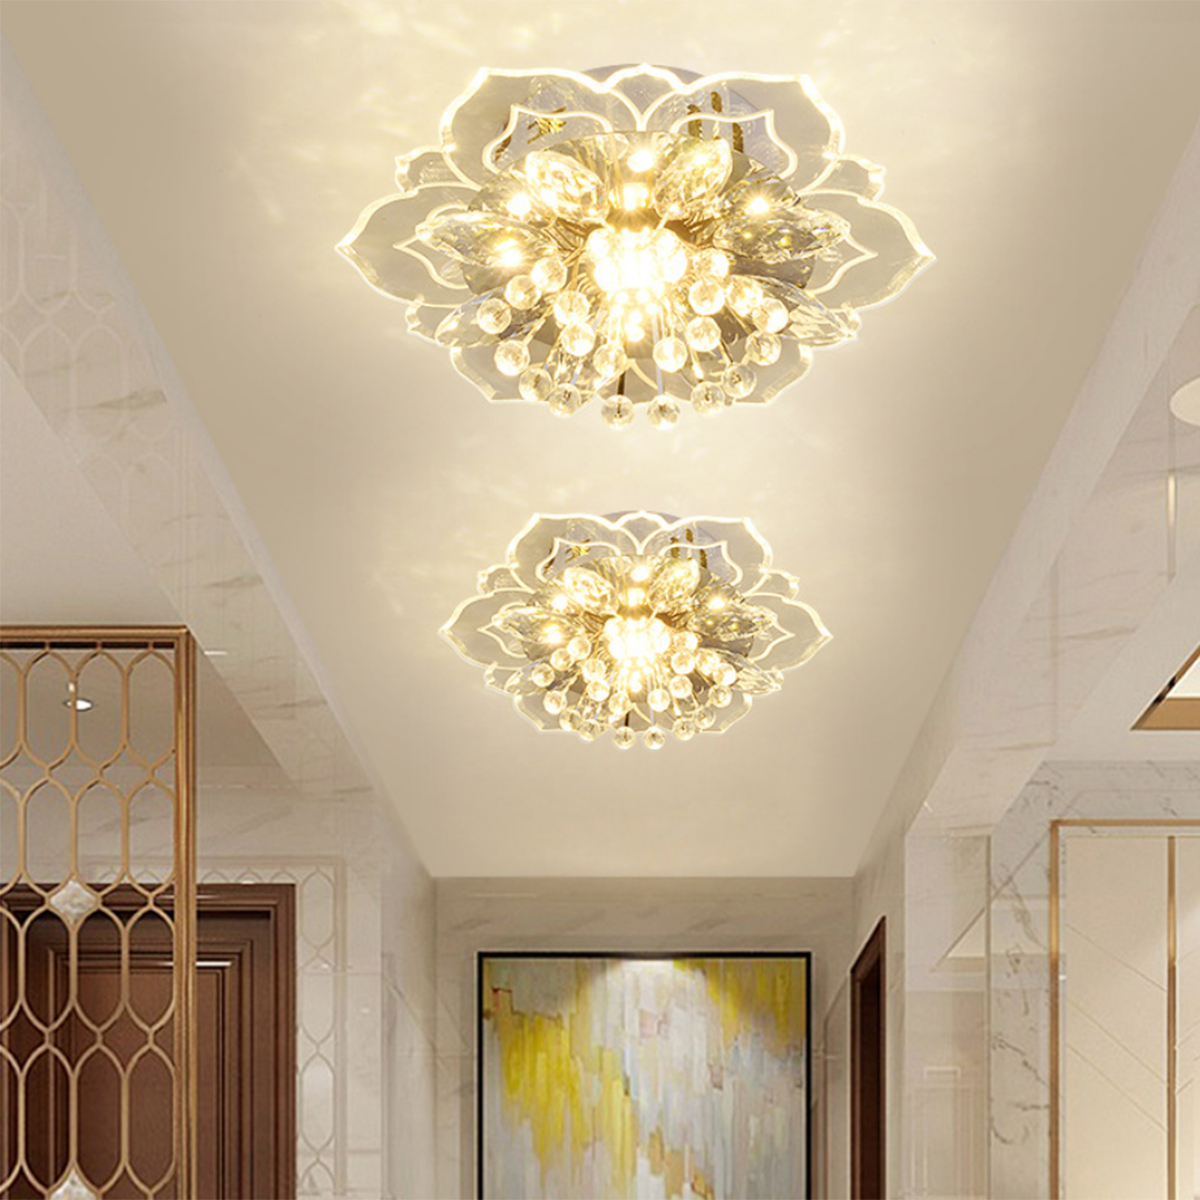 220V-Crystal-LED-Ceiling-Light-Fixture-Pendant-Modern-Lamp-Home-Room-Lighting-1768673-6